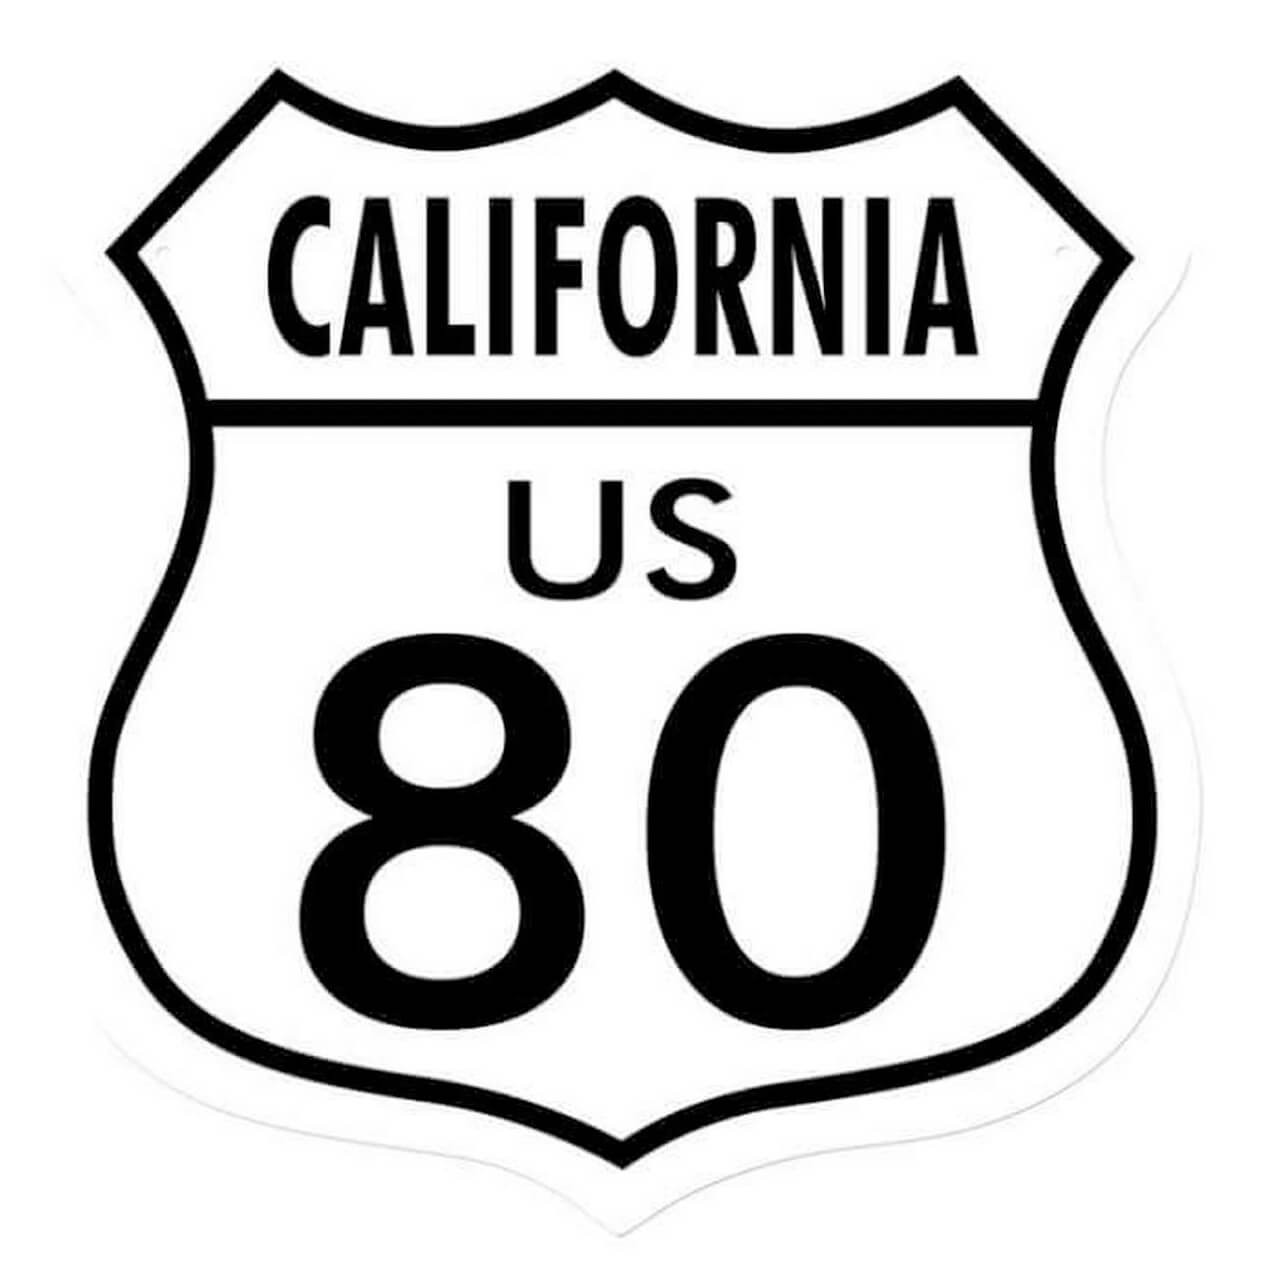 Retro Route 80 California Shield Metal Sign 15 x 15 Inches